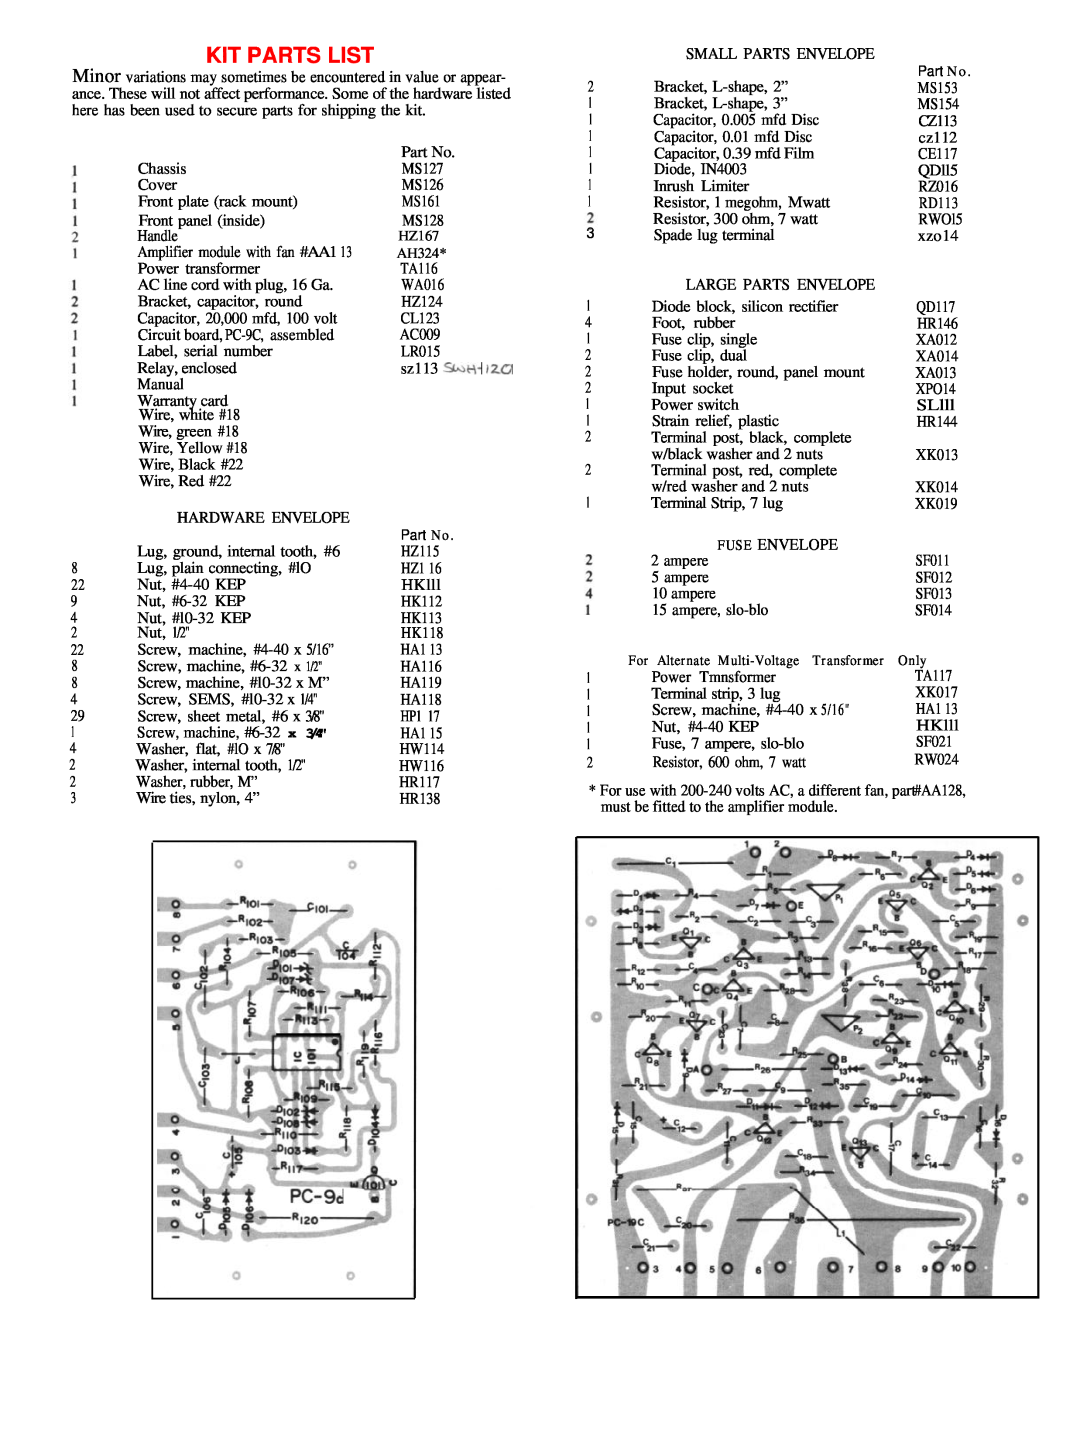 Hafler DH-500 manual Kit Parts List, Pc-% 